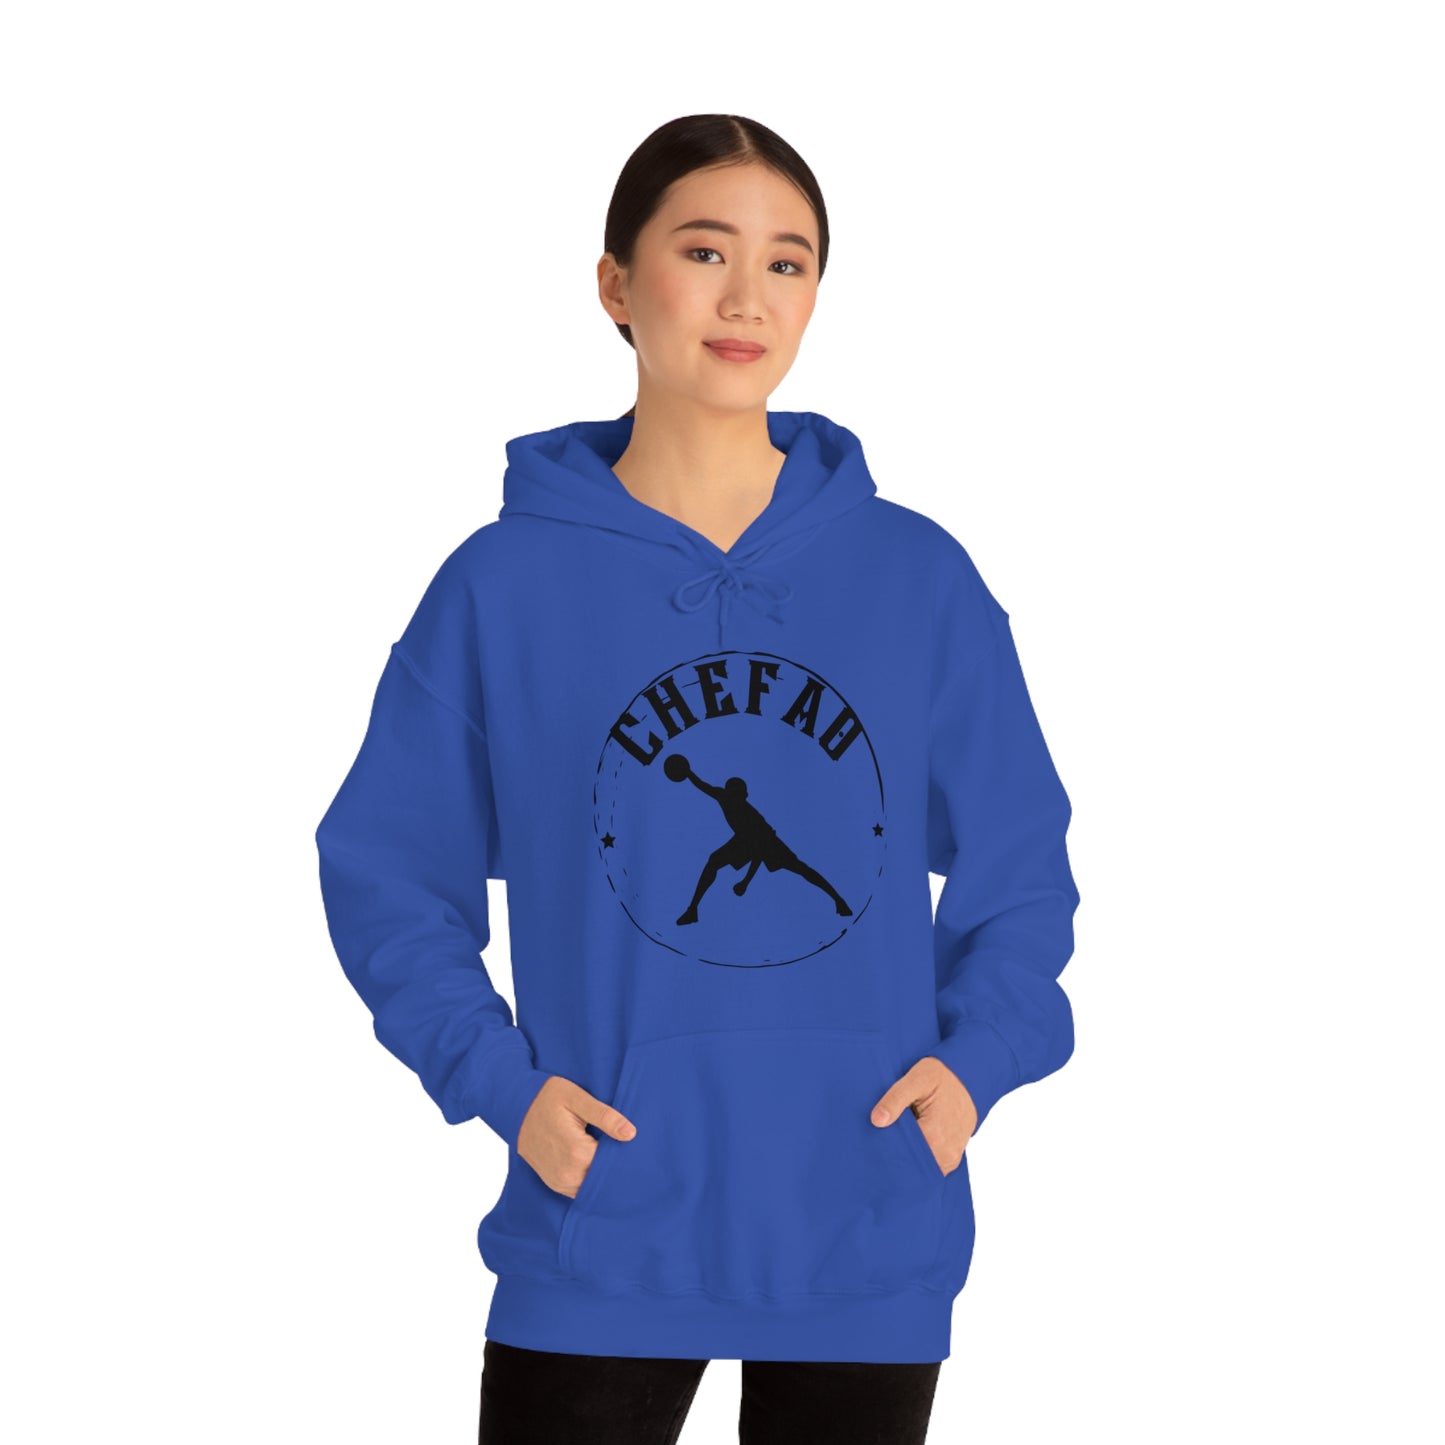 Chefao Basketball III, Unisex Heavy Blend Hooded Sweatshirt